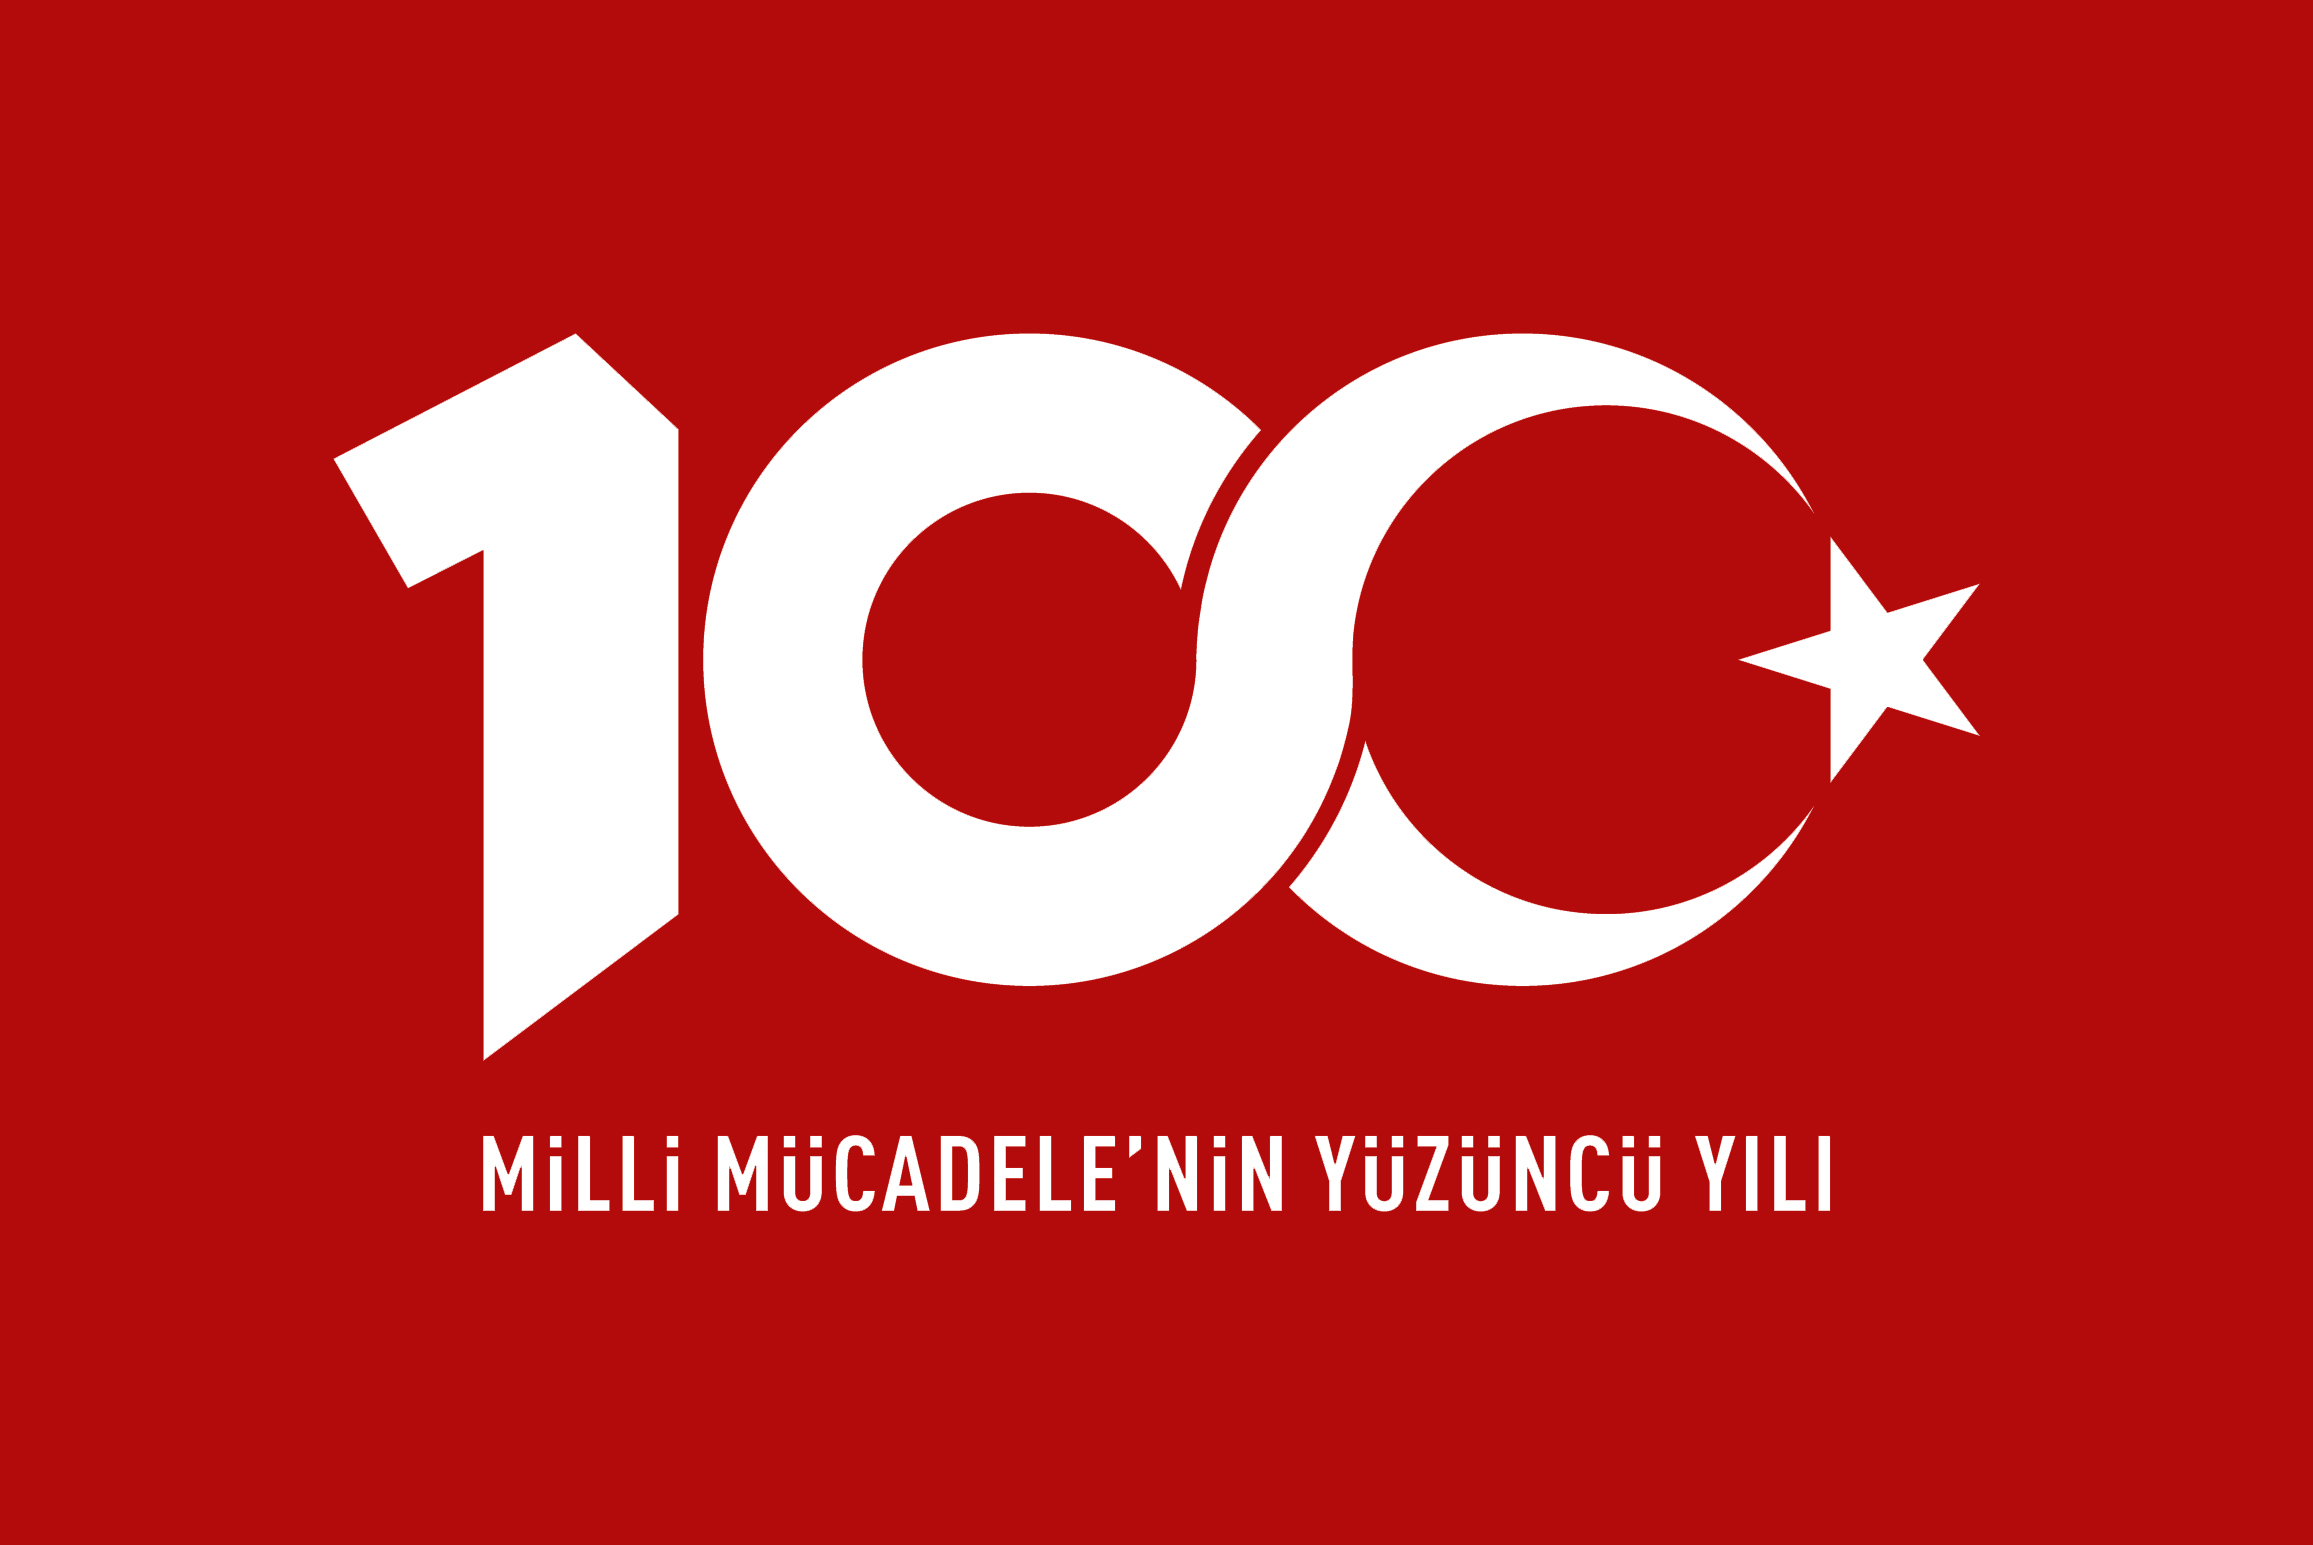 100 Yıl Logolu Türk Bayrağı 100x150